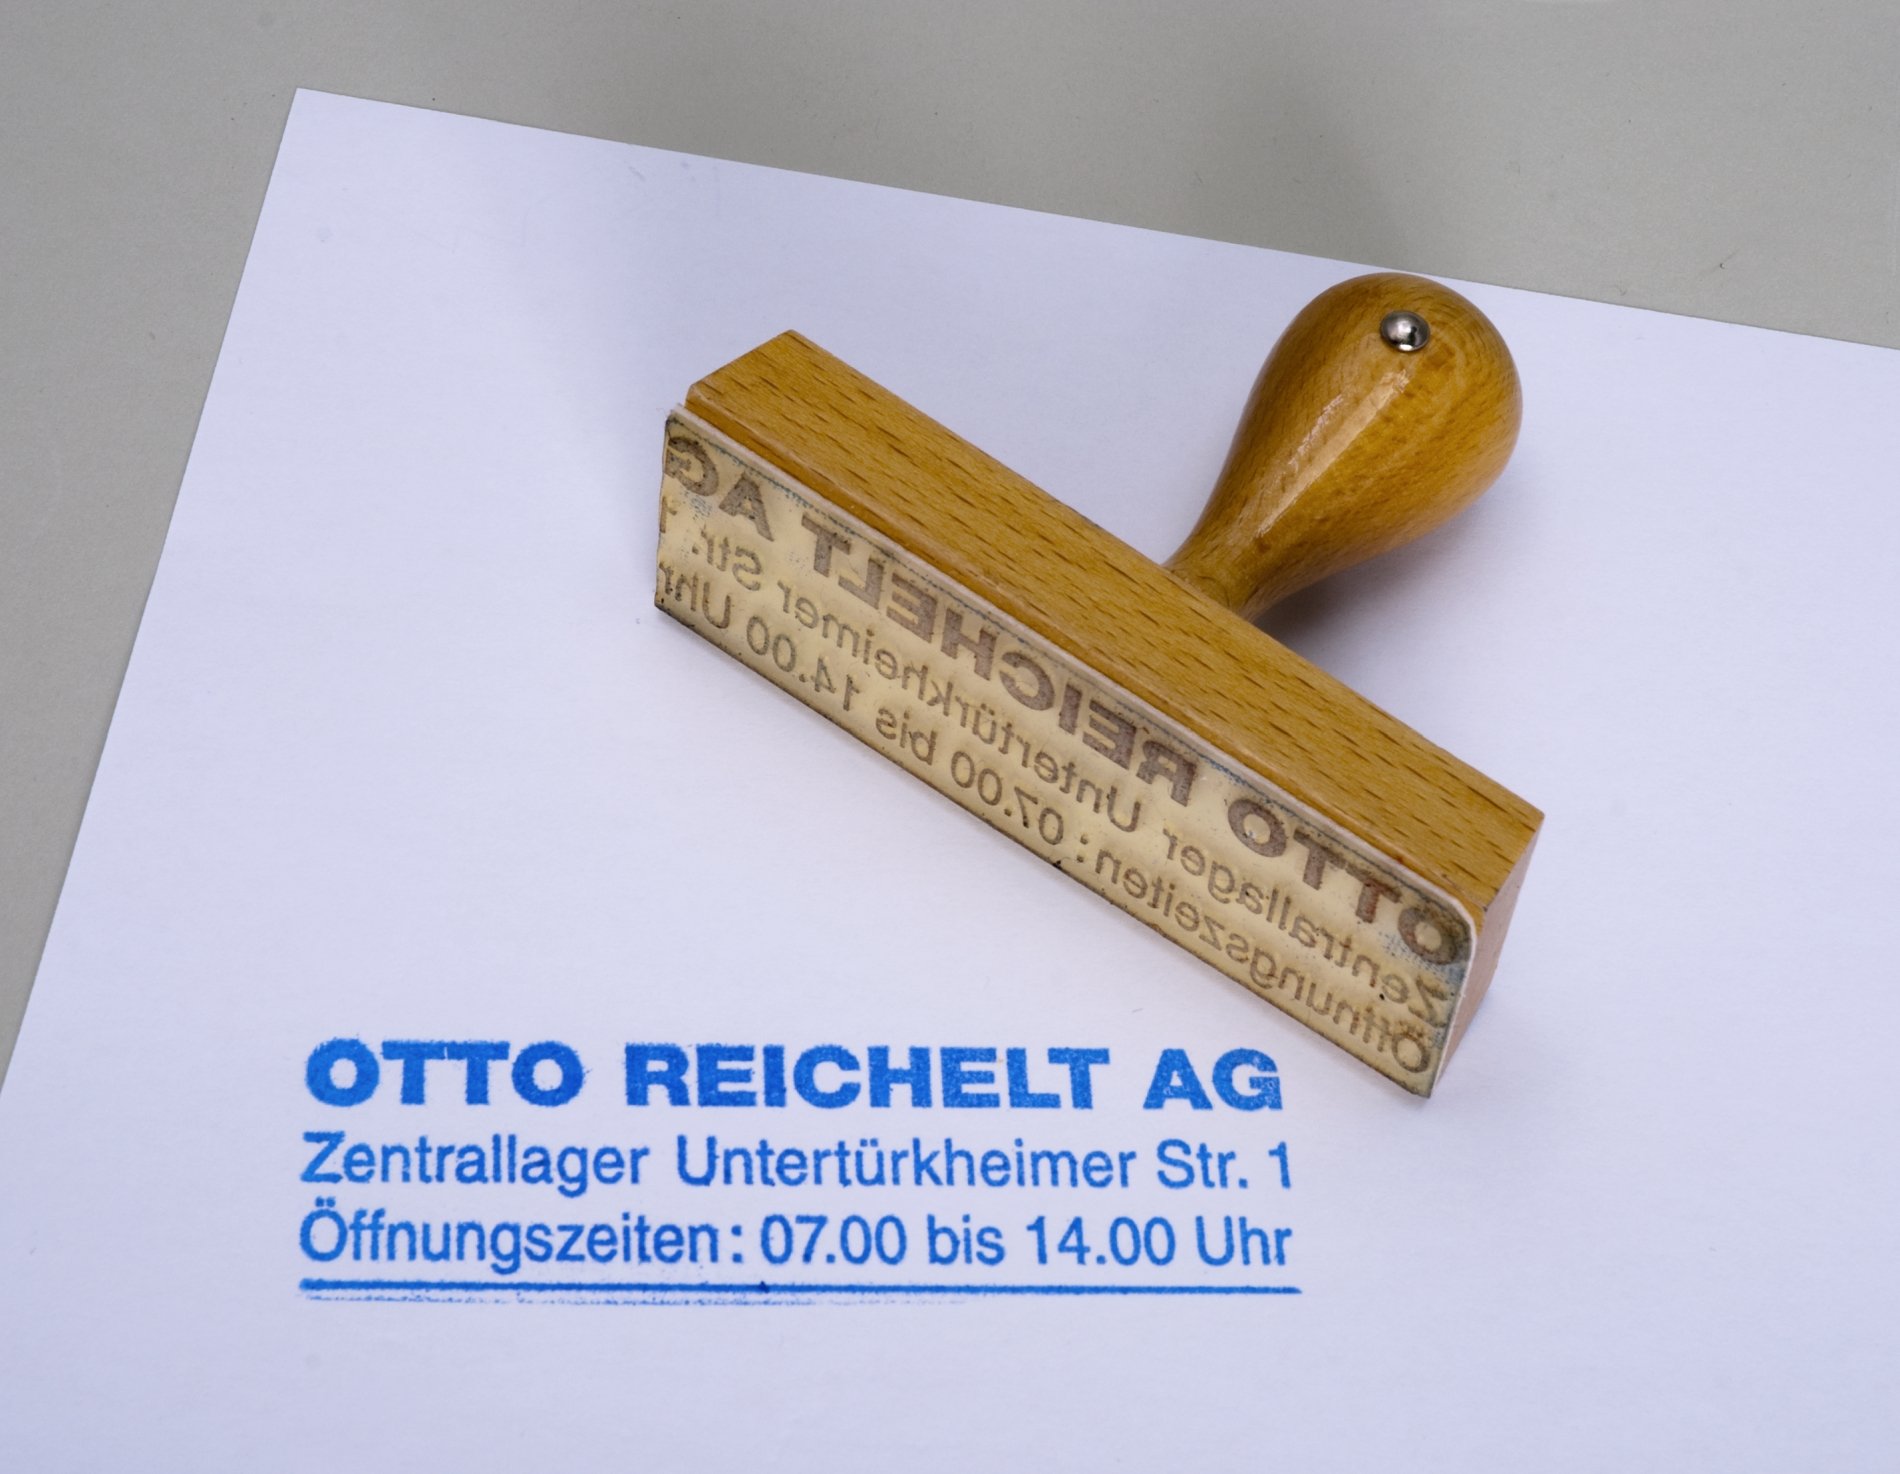 Zwei Stempel "Otto Reichelt AG" (Stiftung Domäne Dahlem - Landgut und Museum, Weiternutzung nur mit Genehmigung des Museums CC BY-NC-SA)